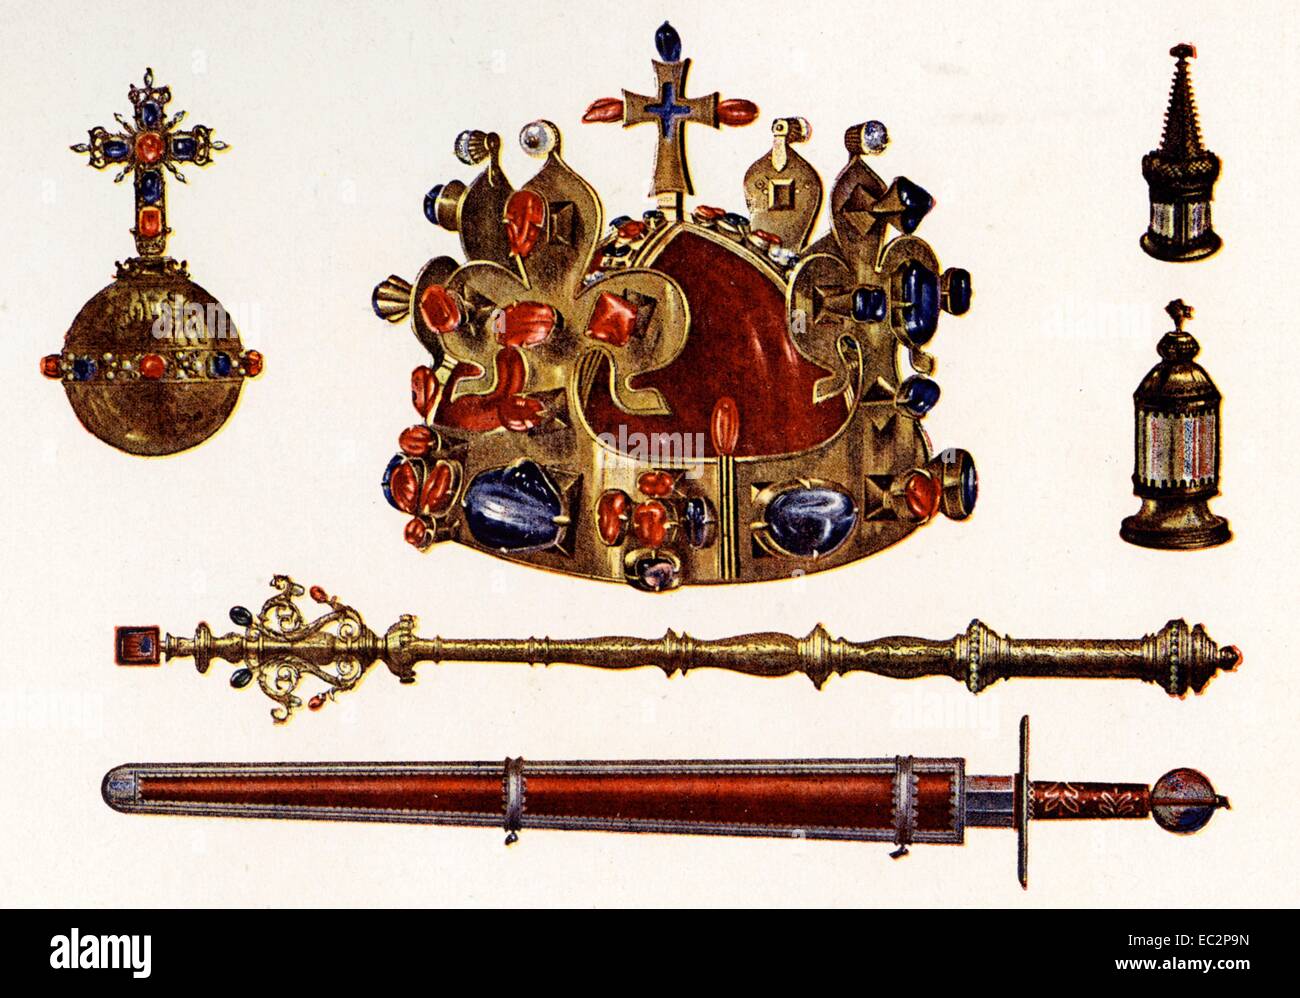 Les Joyaux de la Couronne de Bohême, parfois appelé le joyaux de la Couronne tchèque Banque D'Images